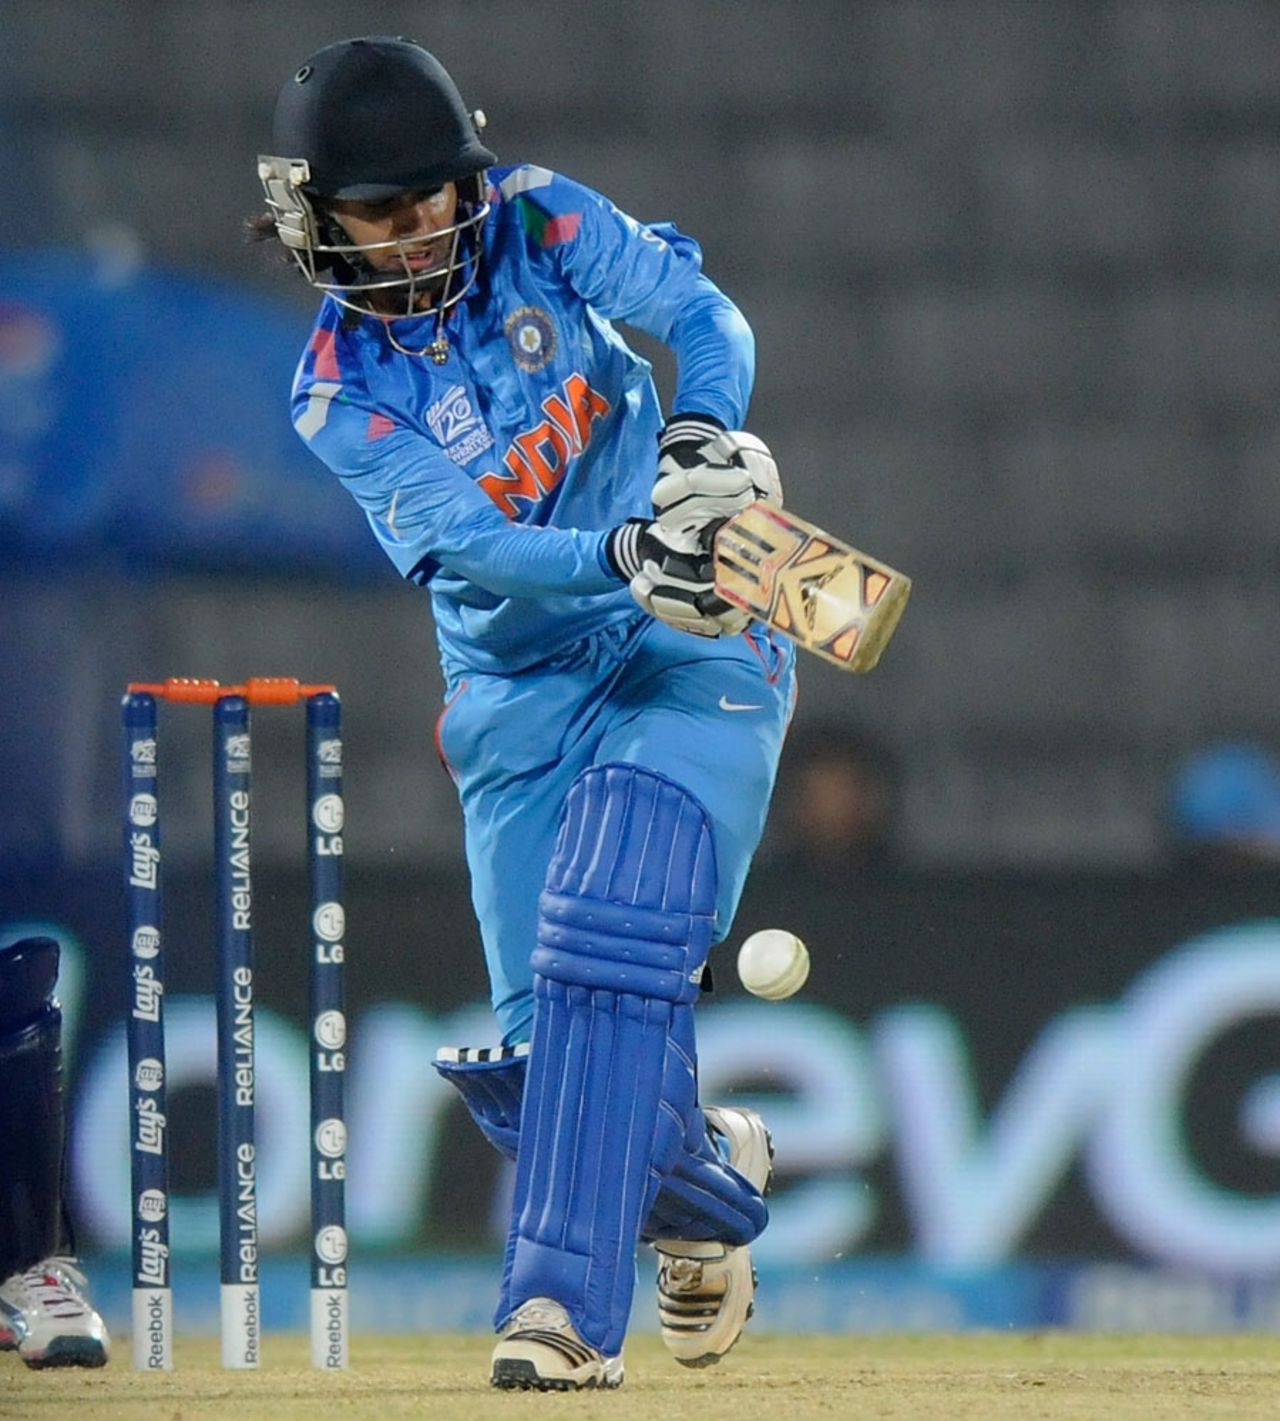 Mithali Raj scored 16, India v Sri Lanka, Women's World Twenty20 2014, Group B, Sylhet, March 24, 2014